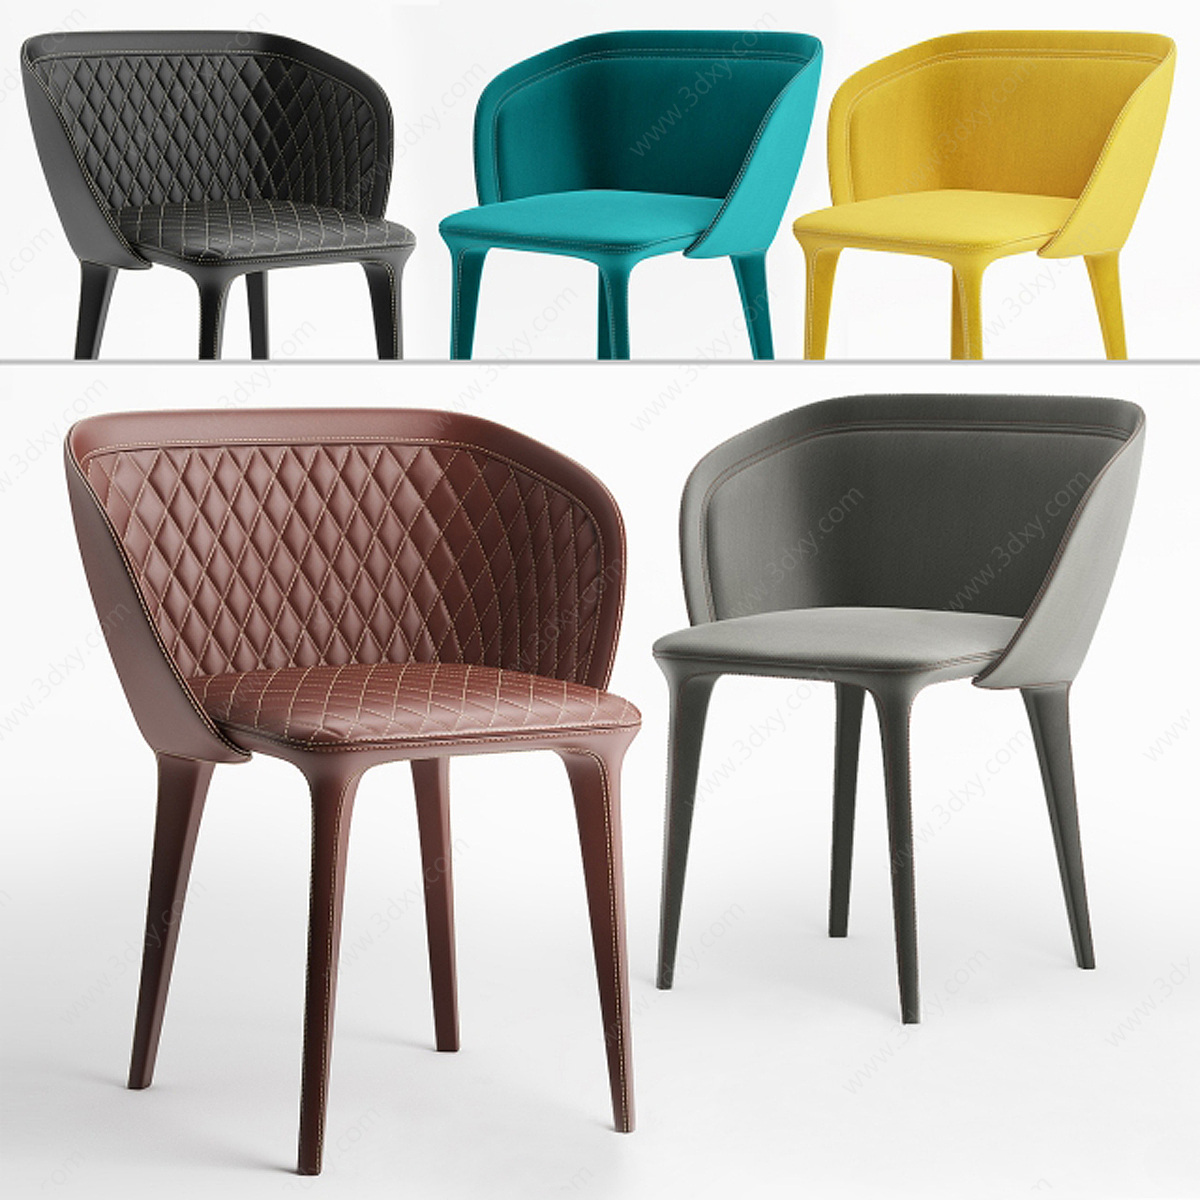 北欧风格时尚椅子3D模型